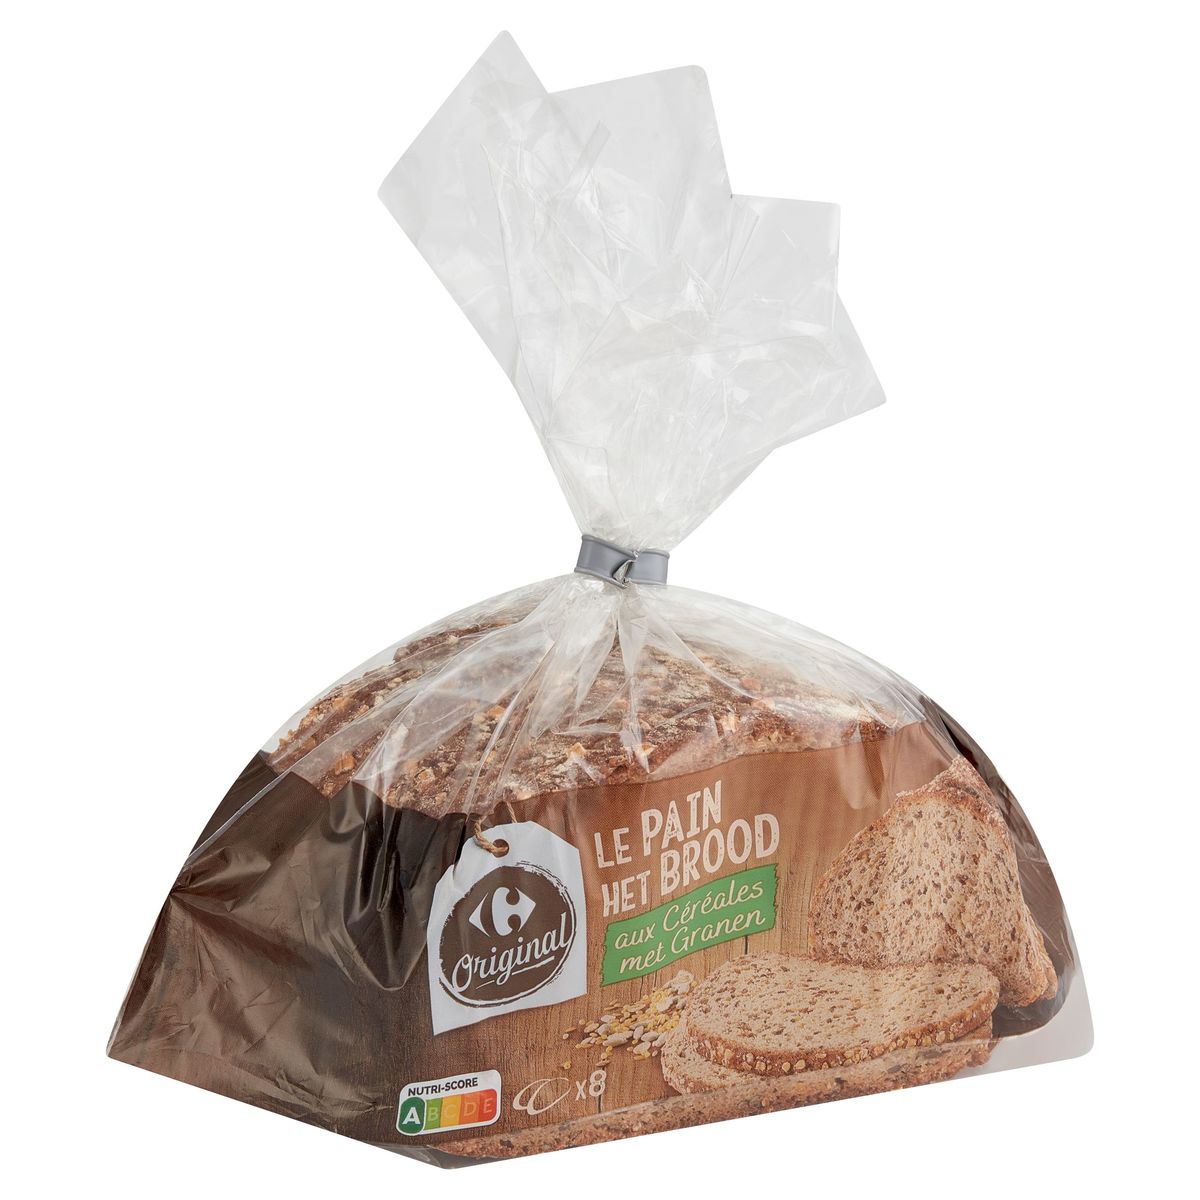 Carrefour Original het Brood met Granen 8 Stuks 500 g